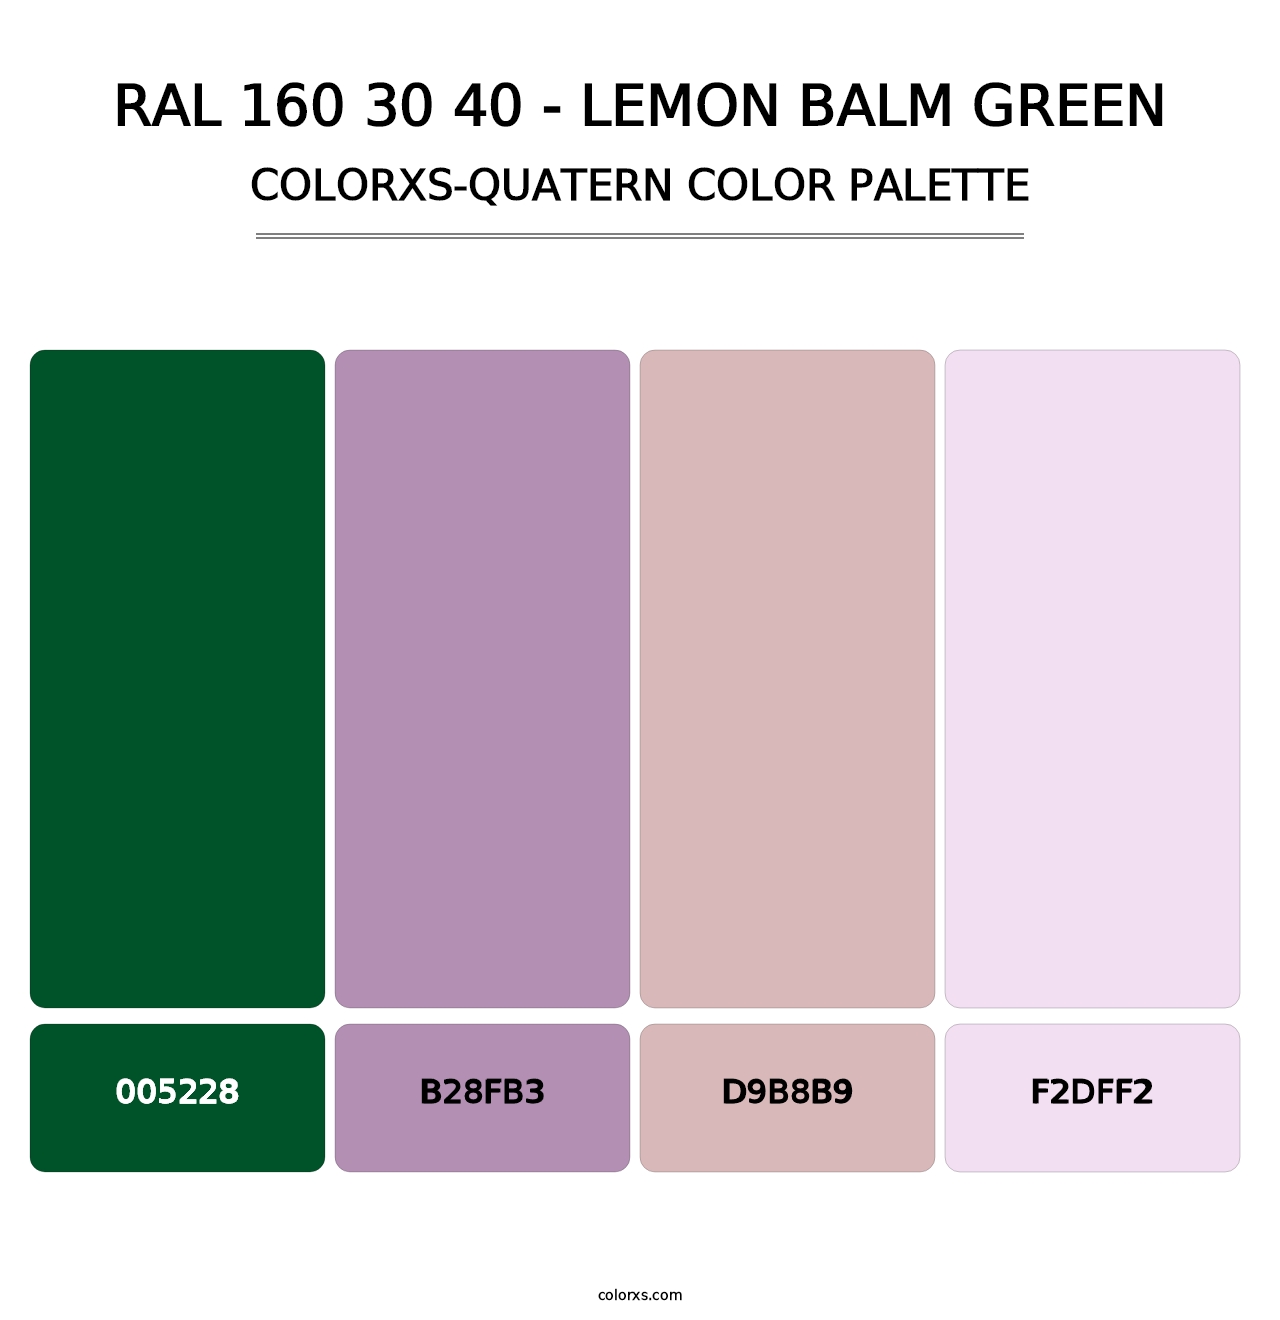 RAL 160 30 40 - Lemon Balm Green - Colorxs Quatern Palette